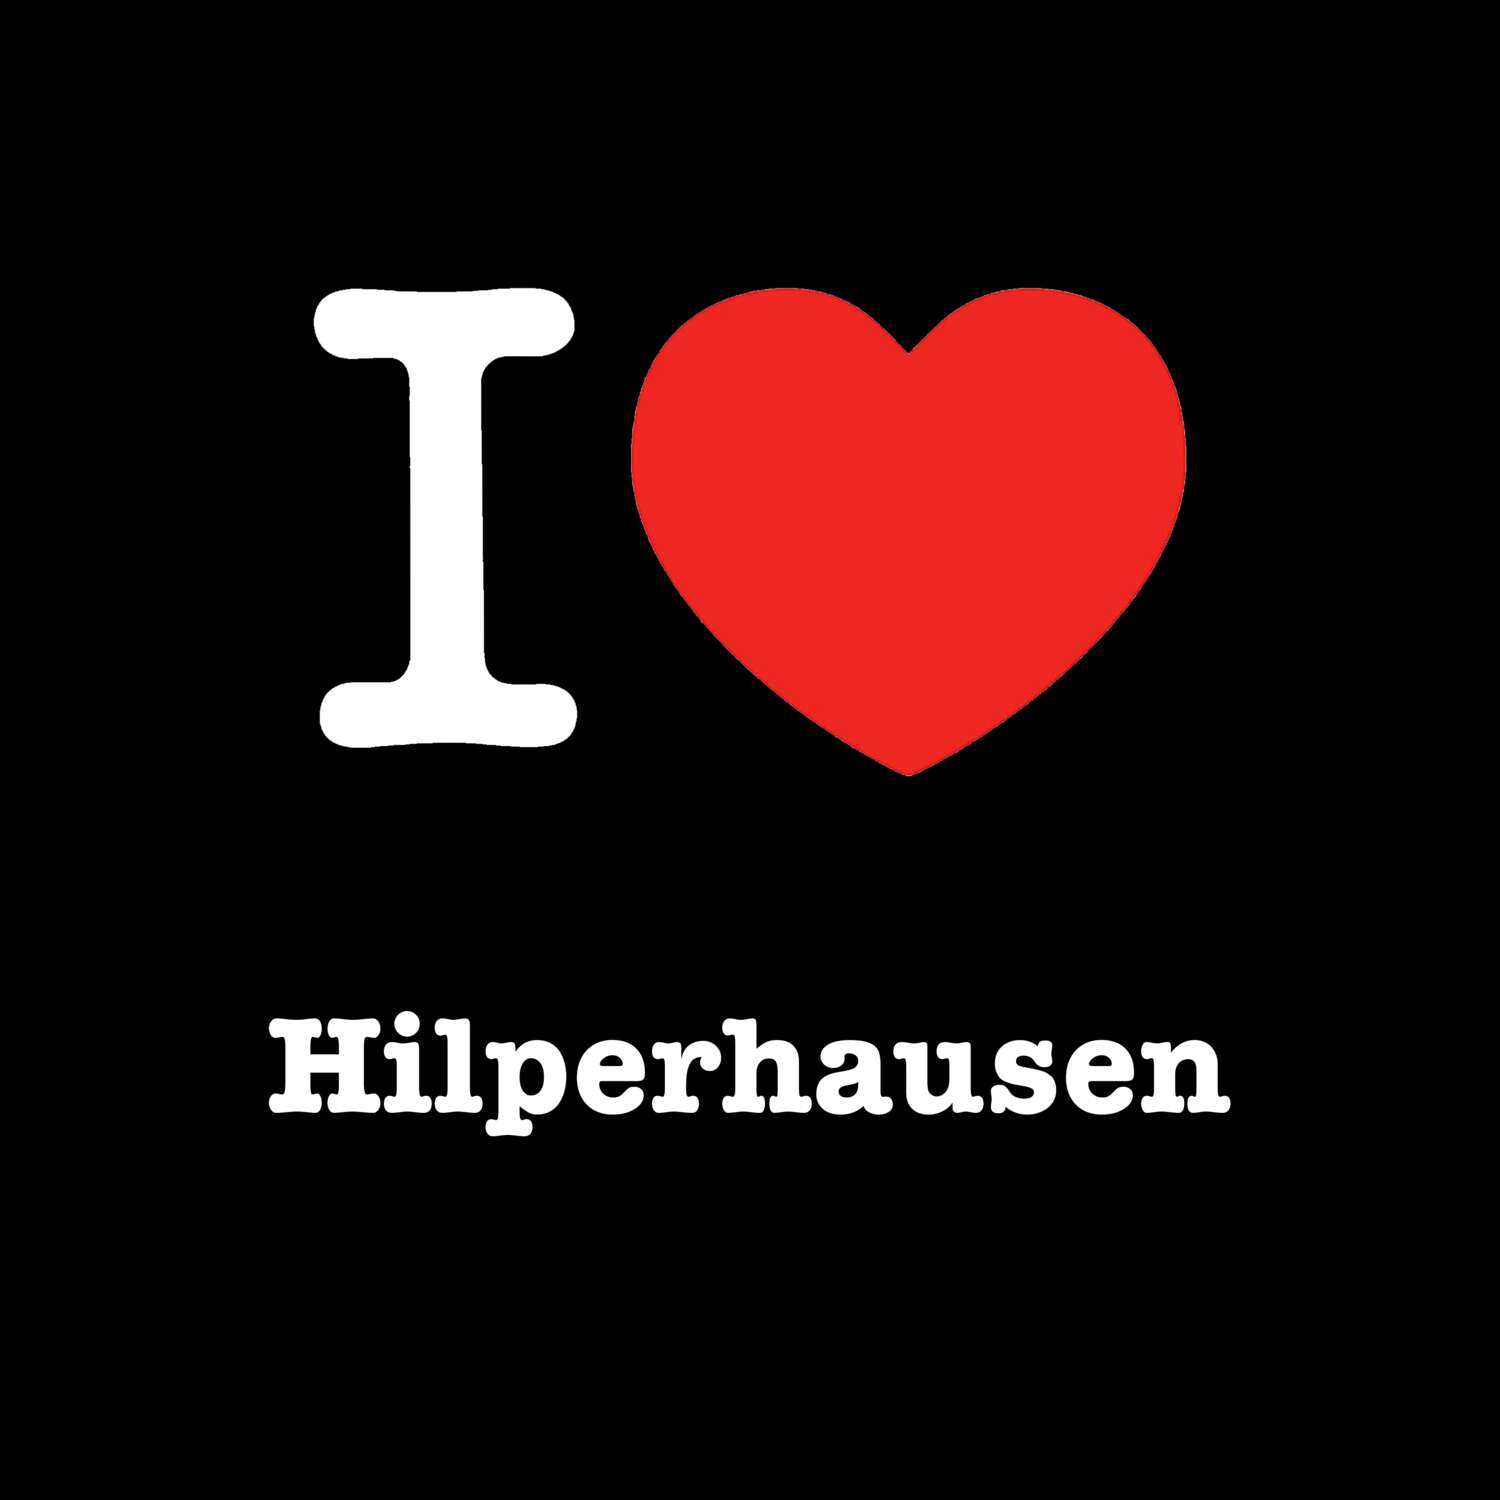 Hilperhausen T-Shirt »I love«